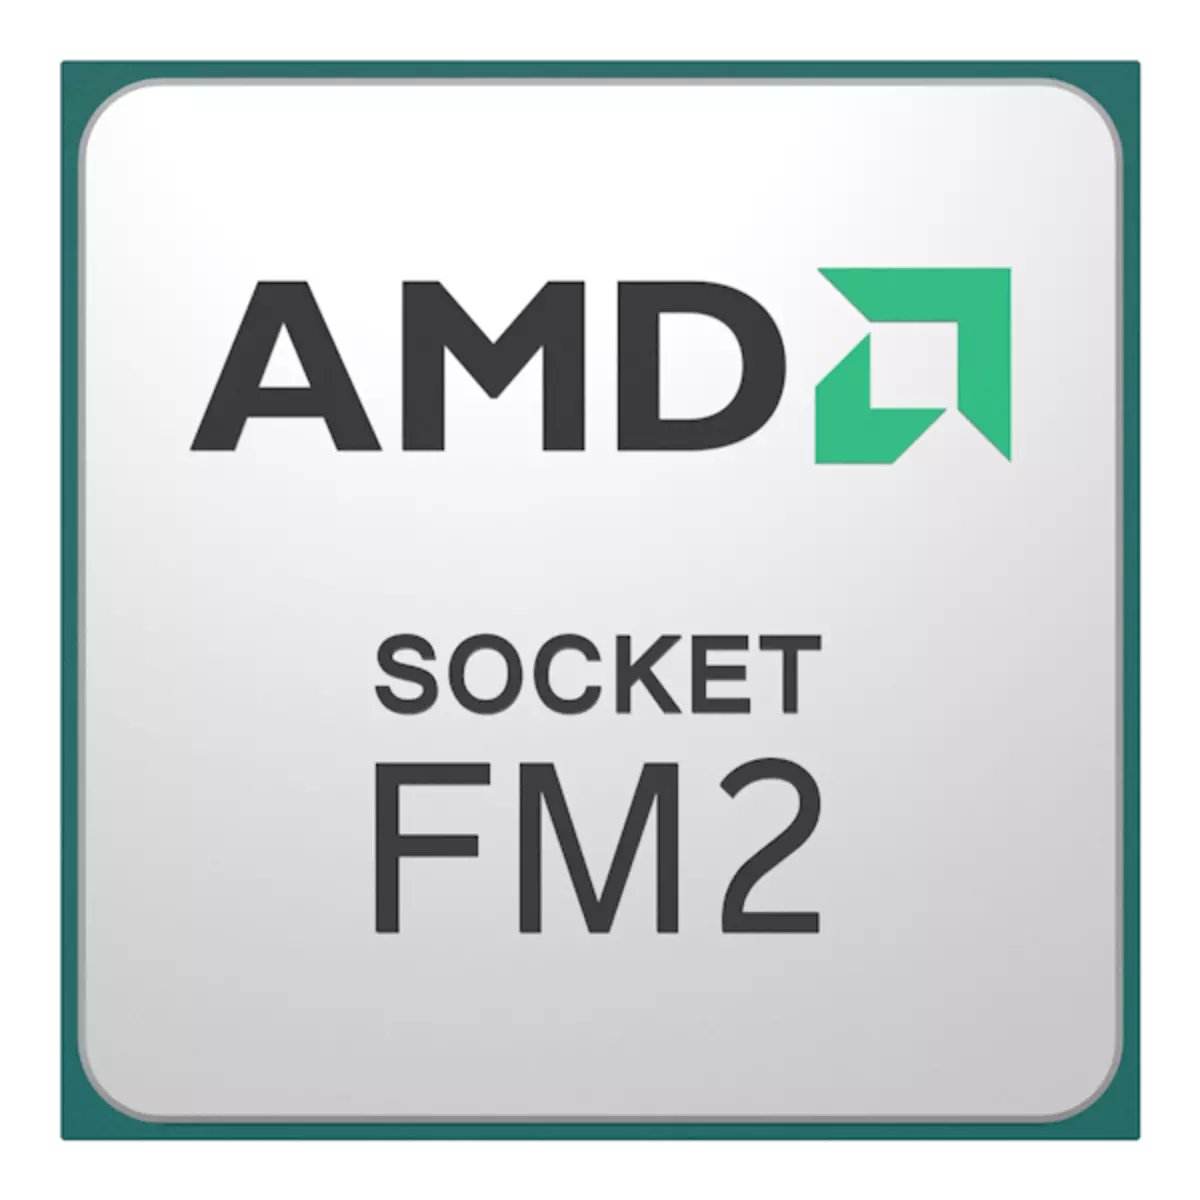 एफएम 2 सॉकेट के लिए समर्थित प्रोसेसर